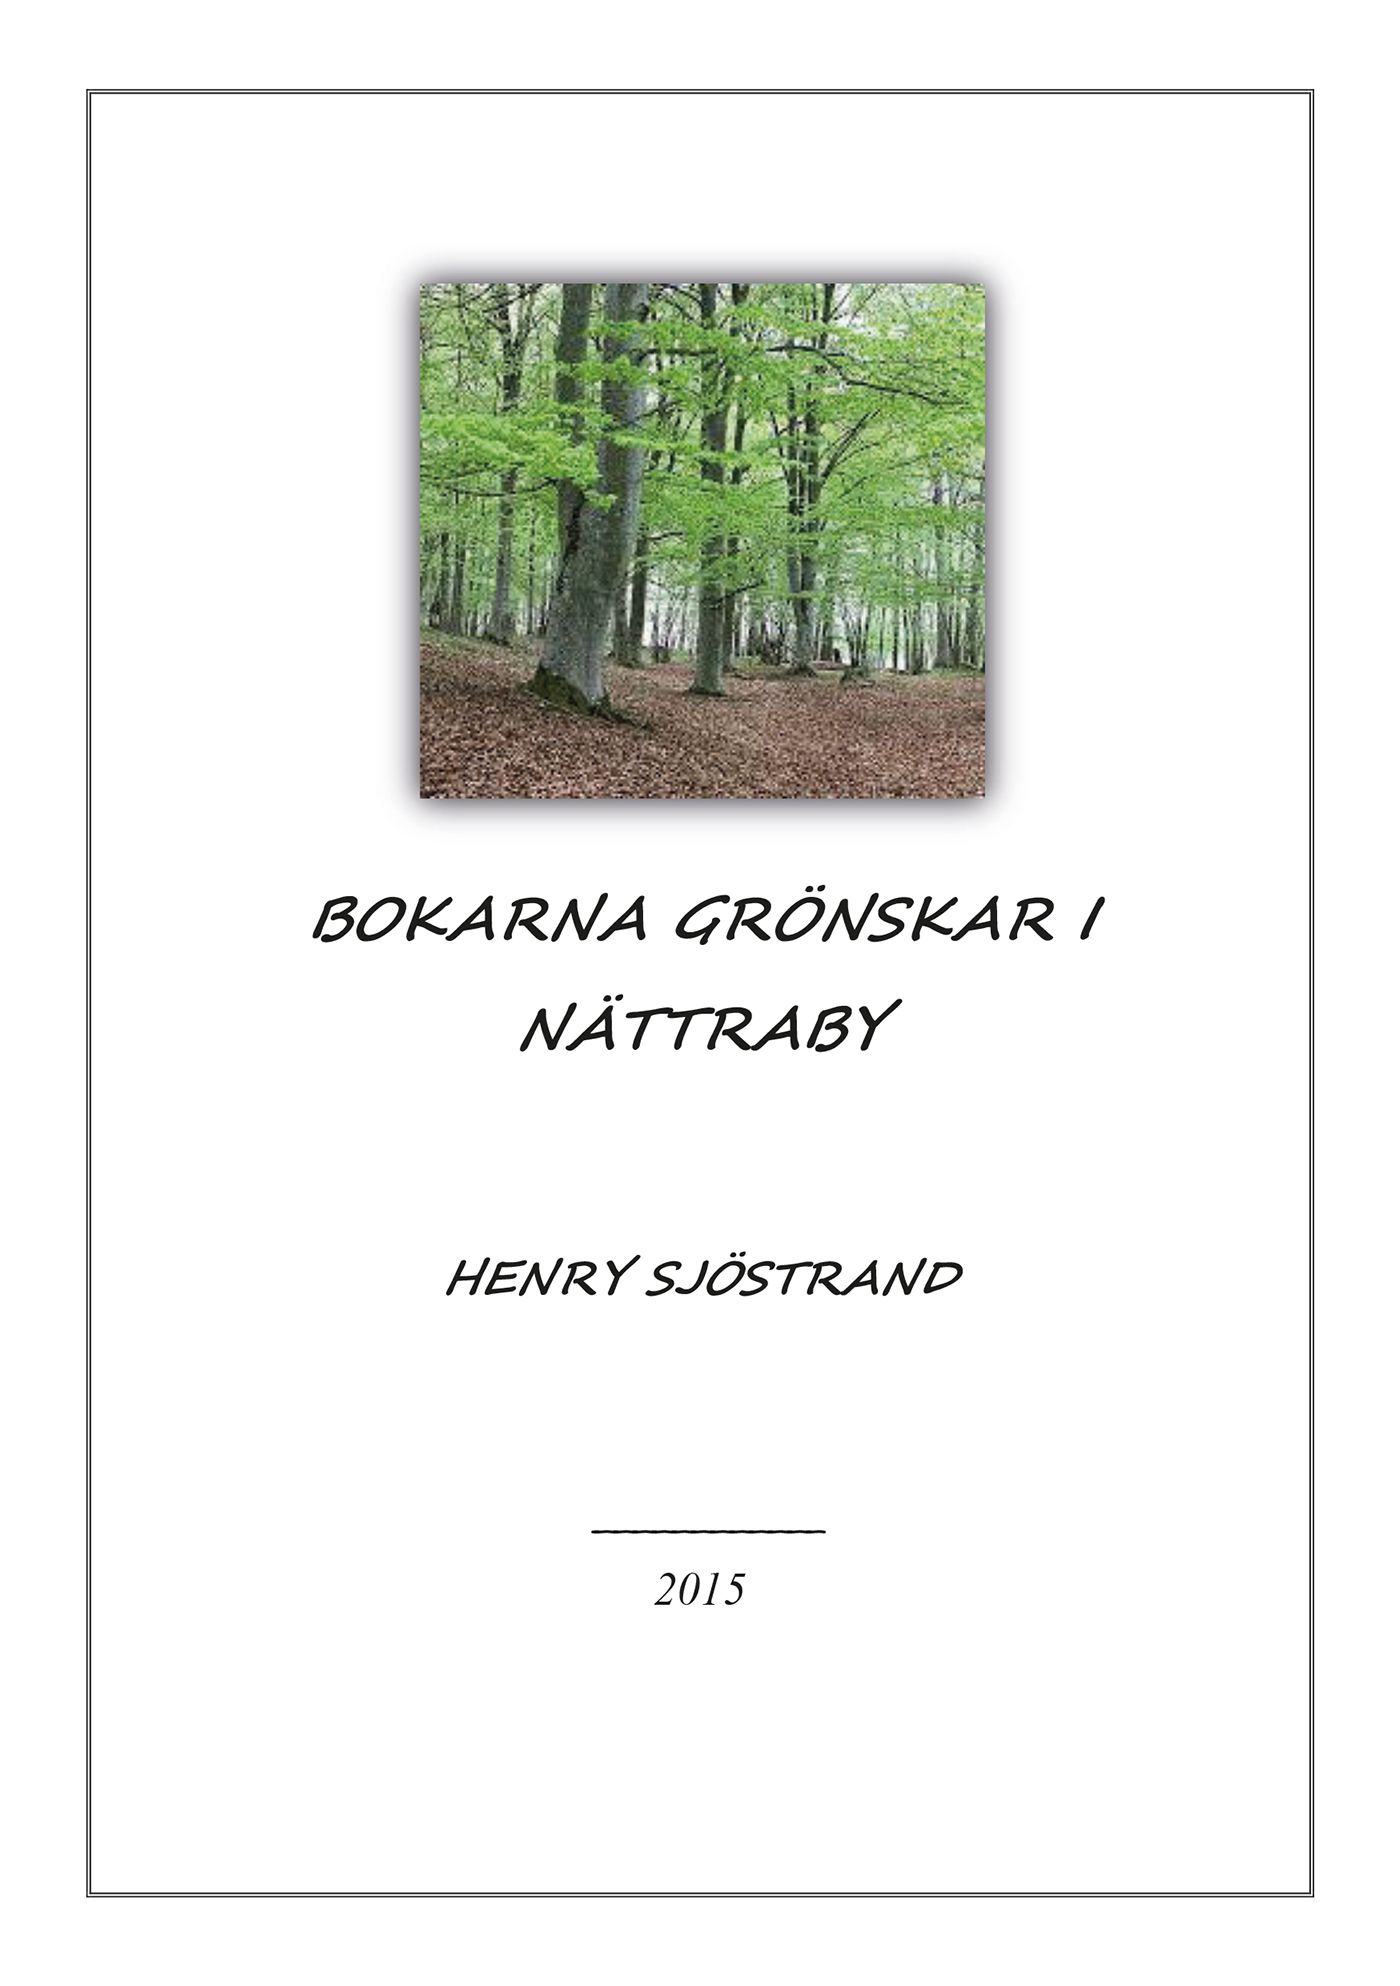 Bokarna grönskar i Nättraby, e-bok av Henry Sjöstrand